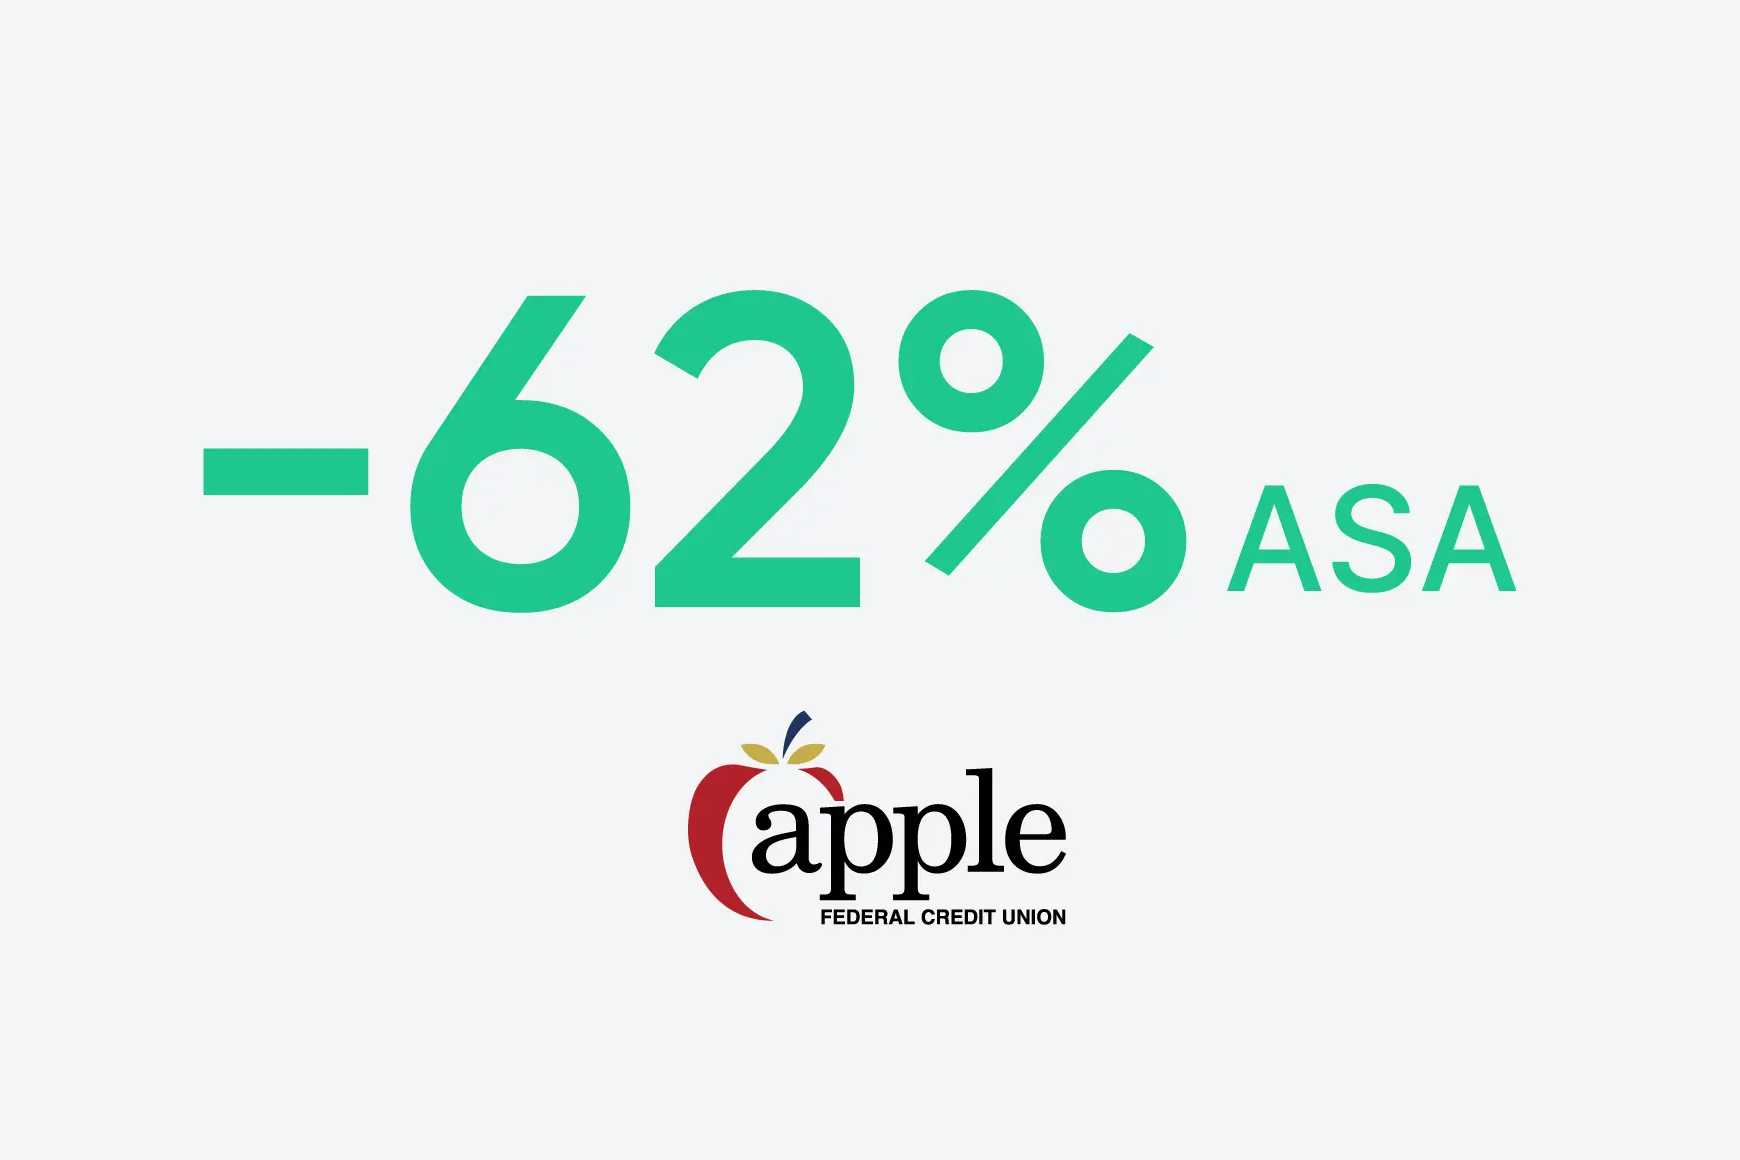 A Apple Federal Credit Union reduziu a ASA em 62%